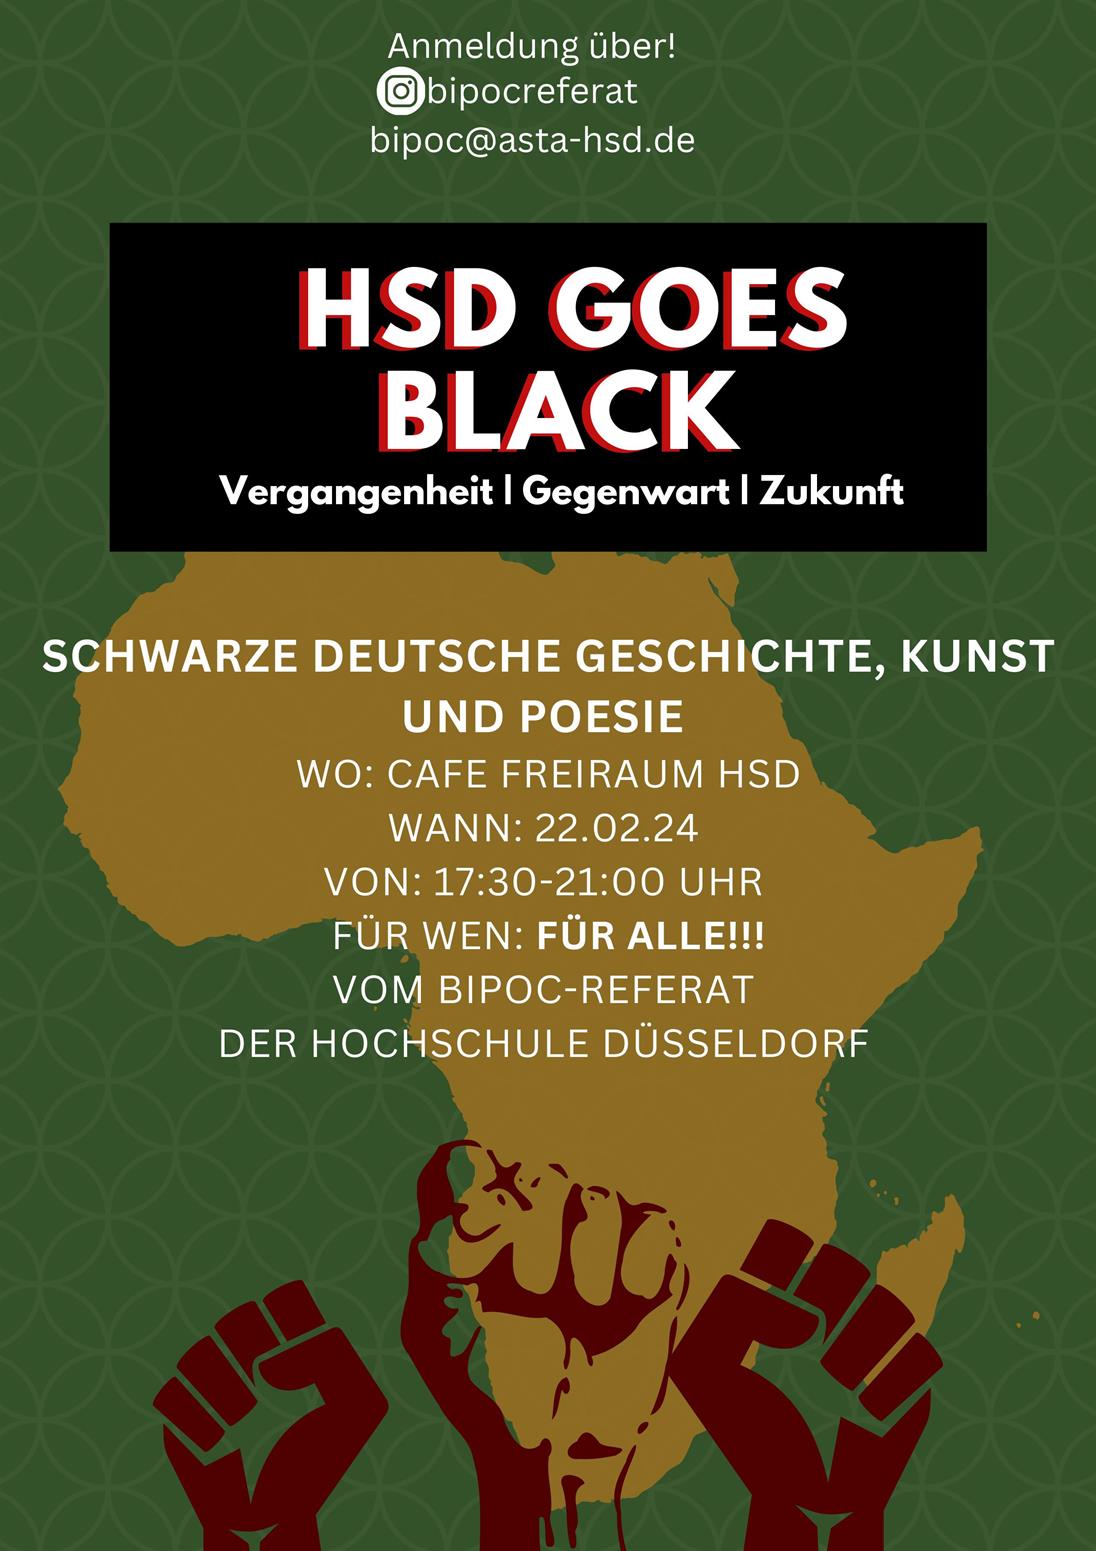 Plakat mit Ankündigung für das Event "HSD Goes Black" am 22.02.2024 an der Hochschule Düsseldorf mit dem Thema Schwarze deutsche Geschichte, Kunst und Poesie